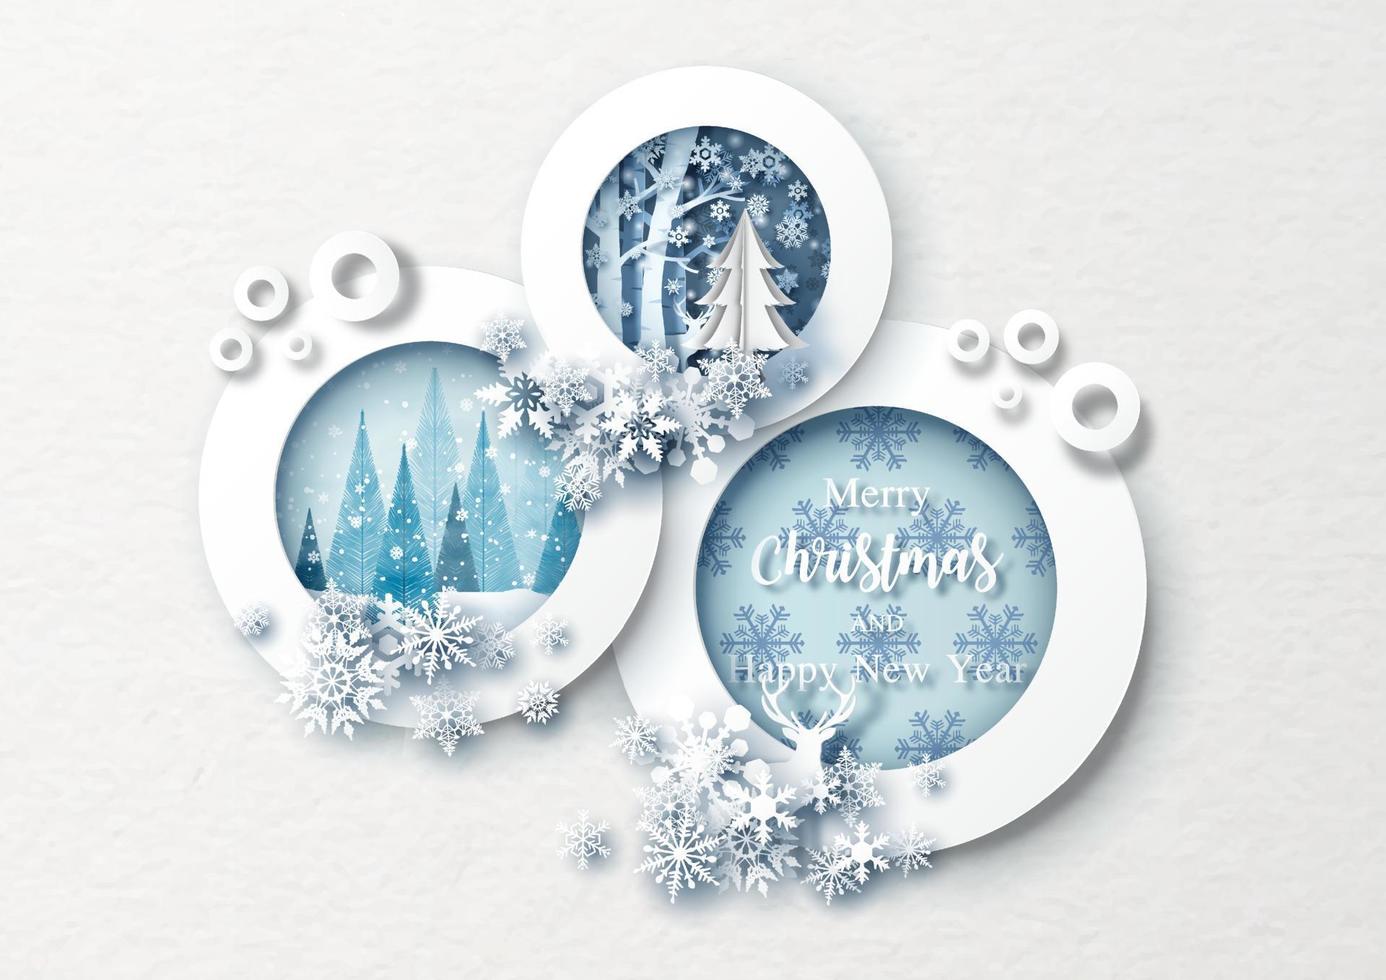 hermosos copos de nieve decorados en círculos marco de imagen de navidad y fondo de patrón de papel blanco. tarjeta de felicitación navideña en estilo de corte de papel y diseño vectorial. vector